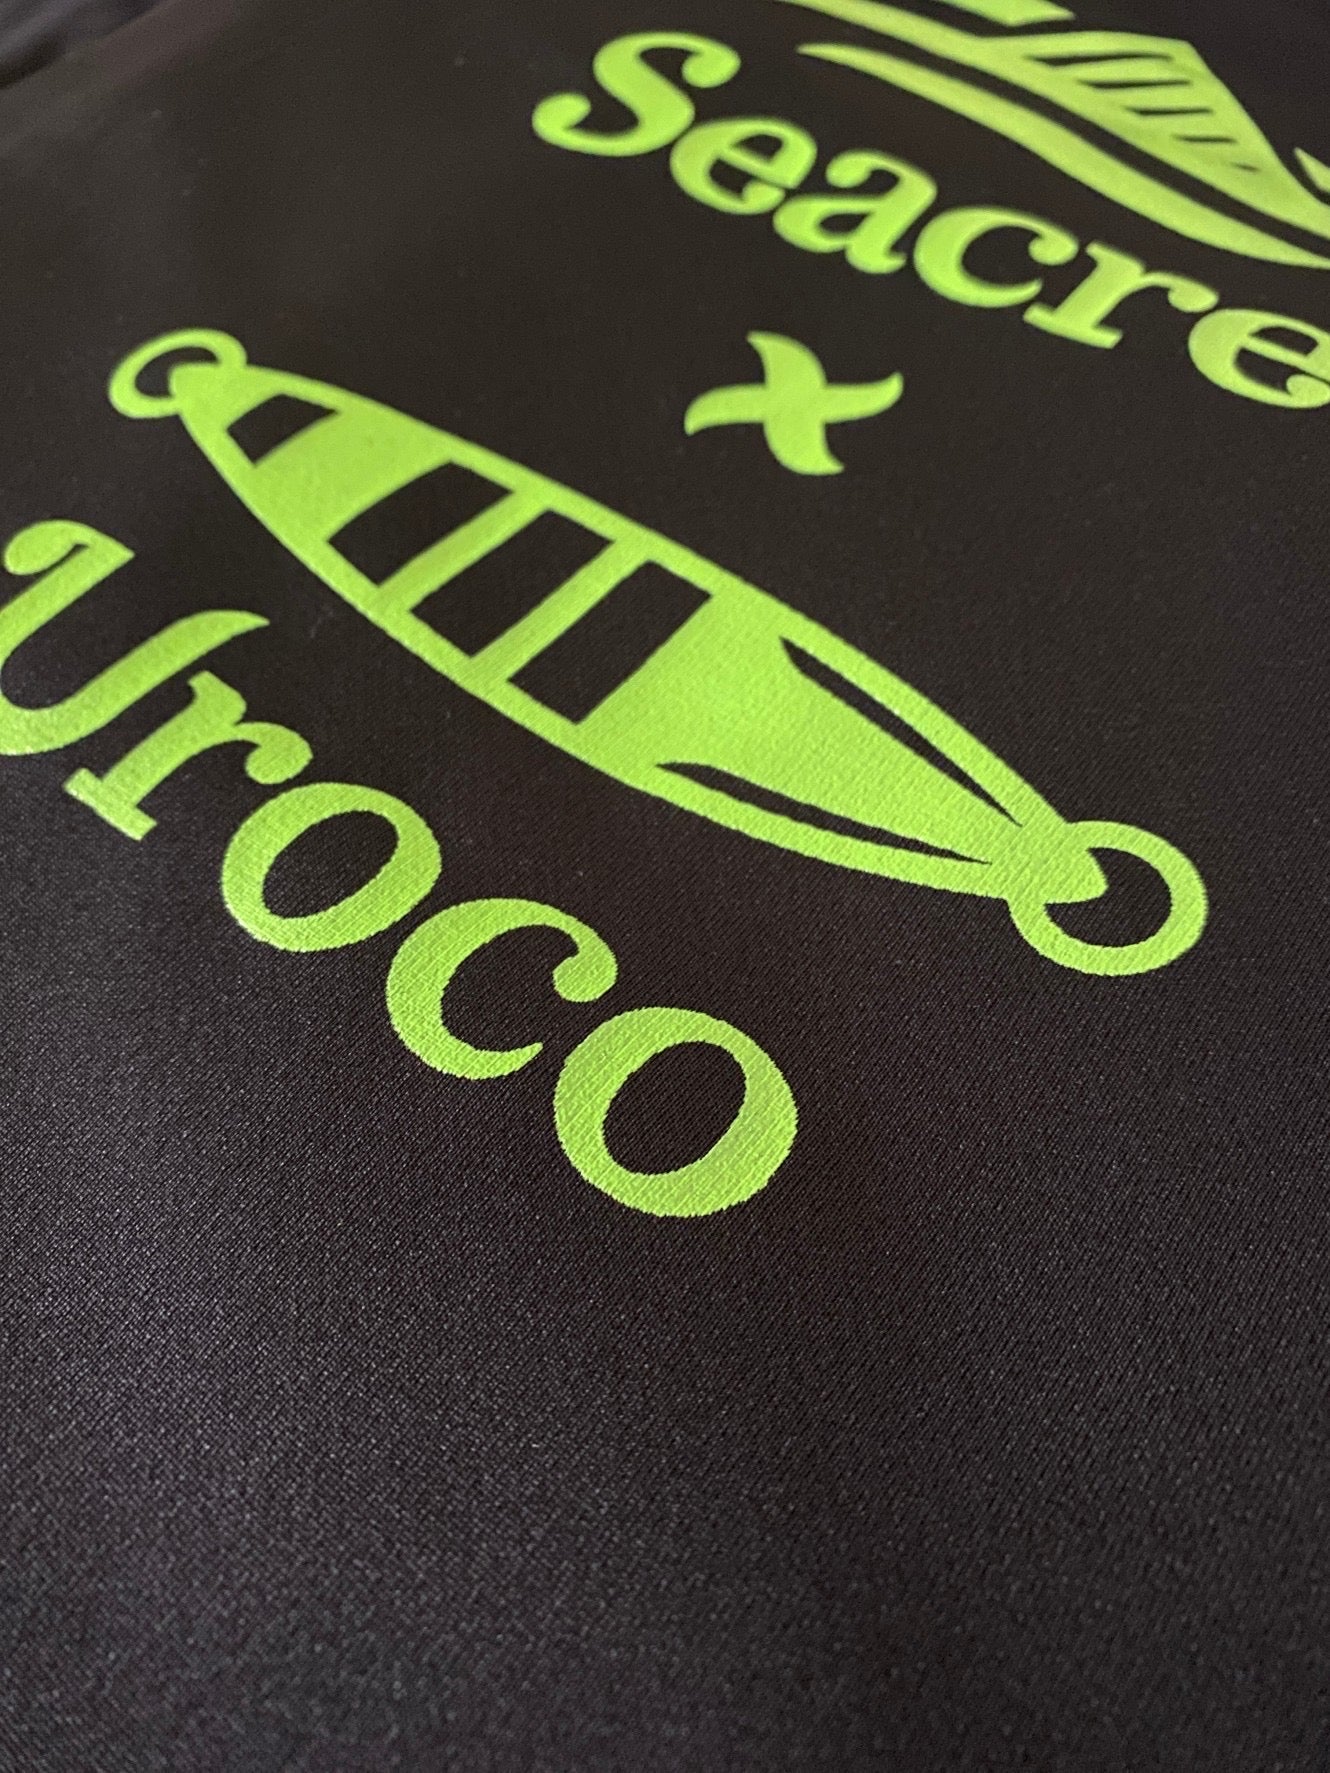 【予約商品】 Seacret uroco コラボ ドライTシャツ シークレット ウロコ